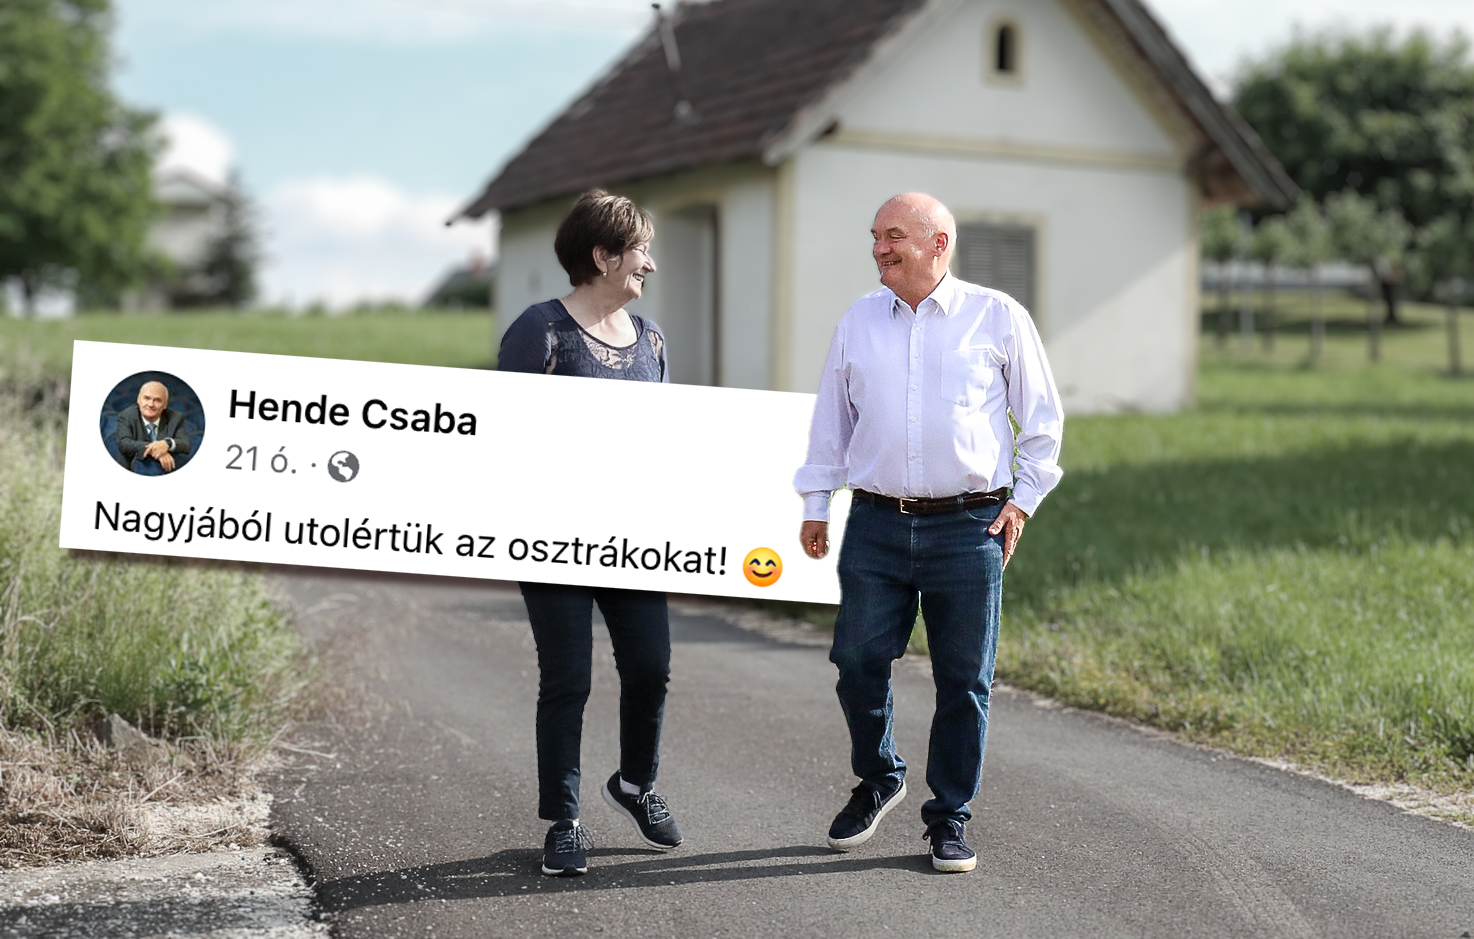 Hende Csaba bejelentette, hogy "nagyjából utolértük" Ausztriát